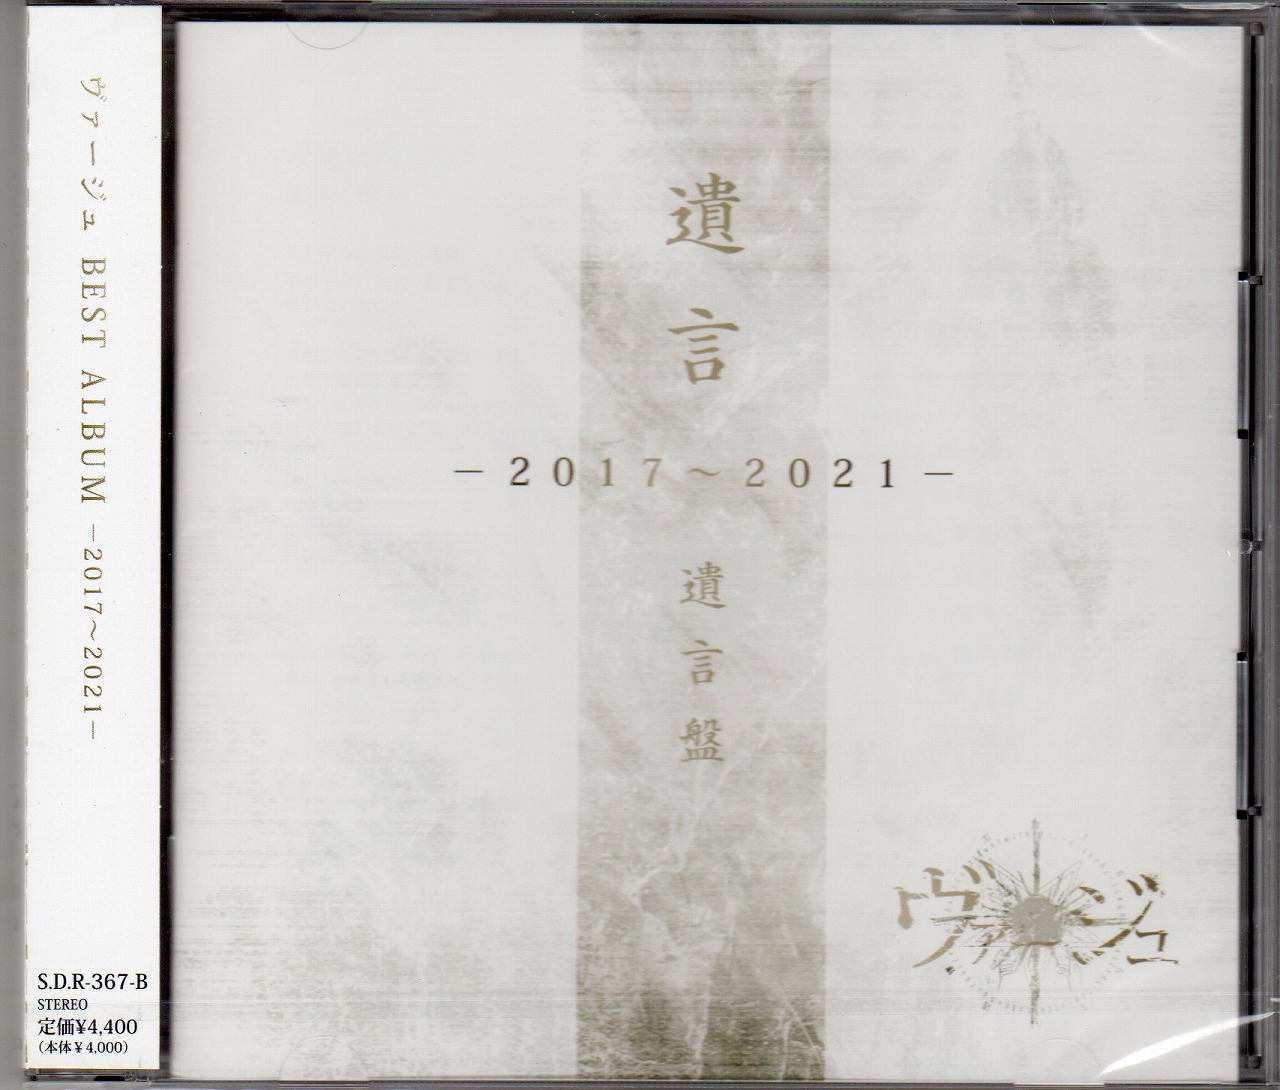 ヴァージュ の CD 【-遺言盤-】「遺言」-2017〜2021-